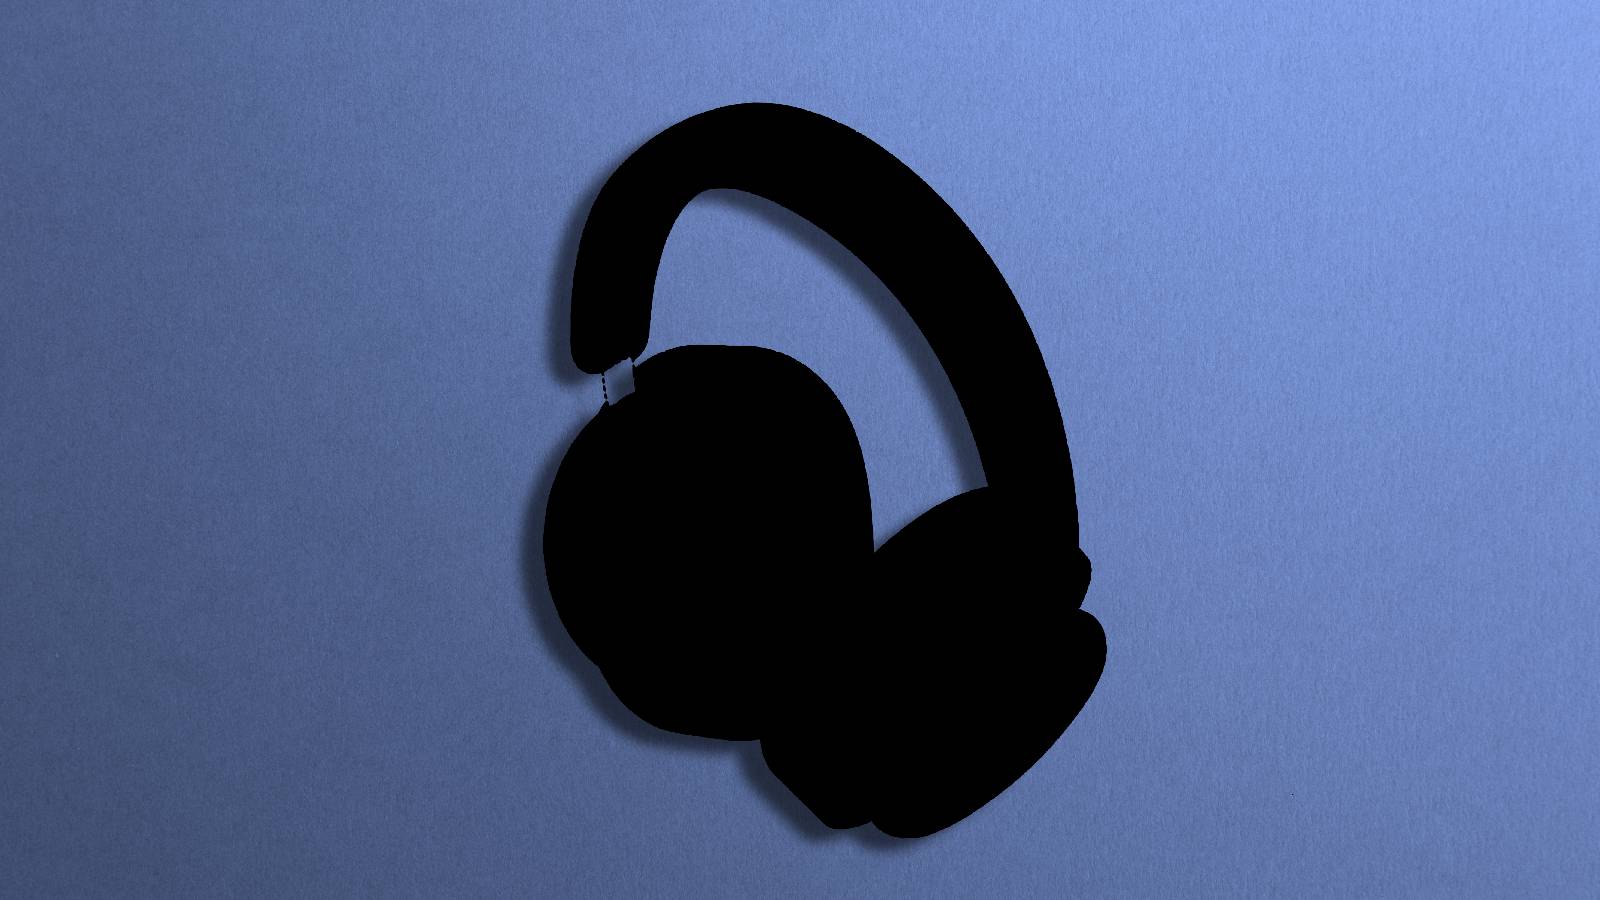 Sonos headphones